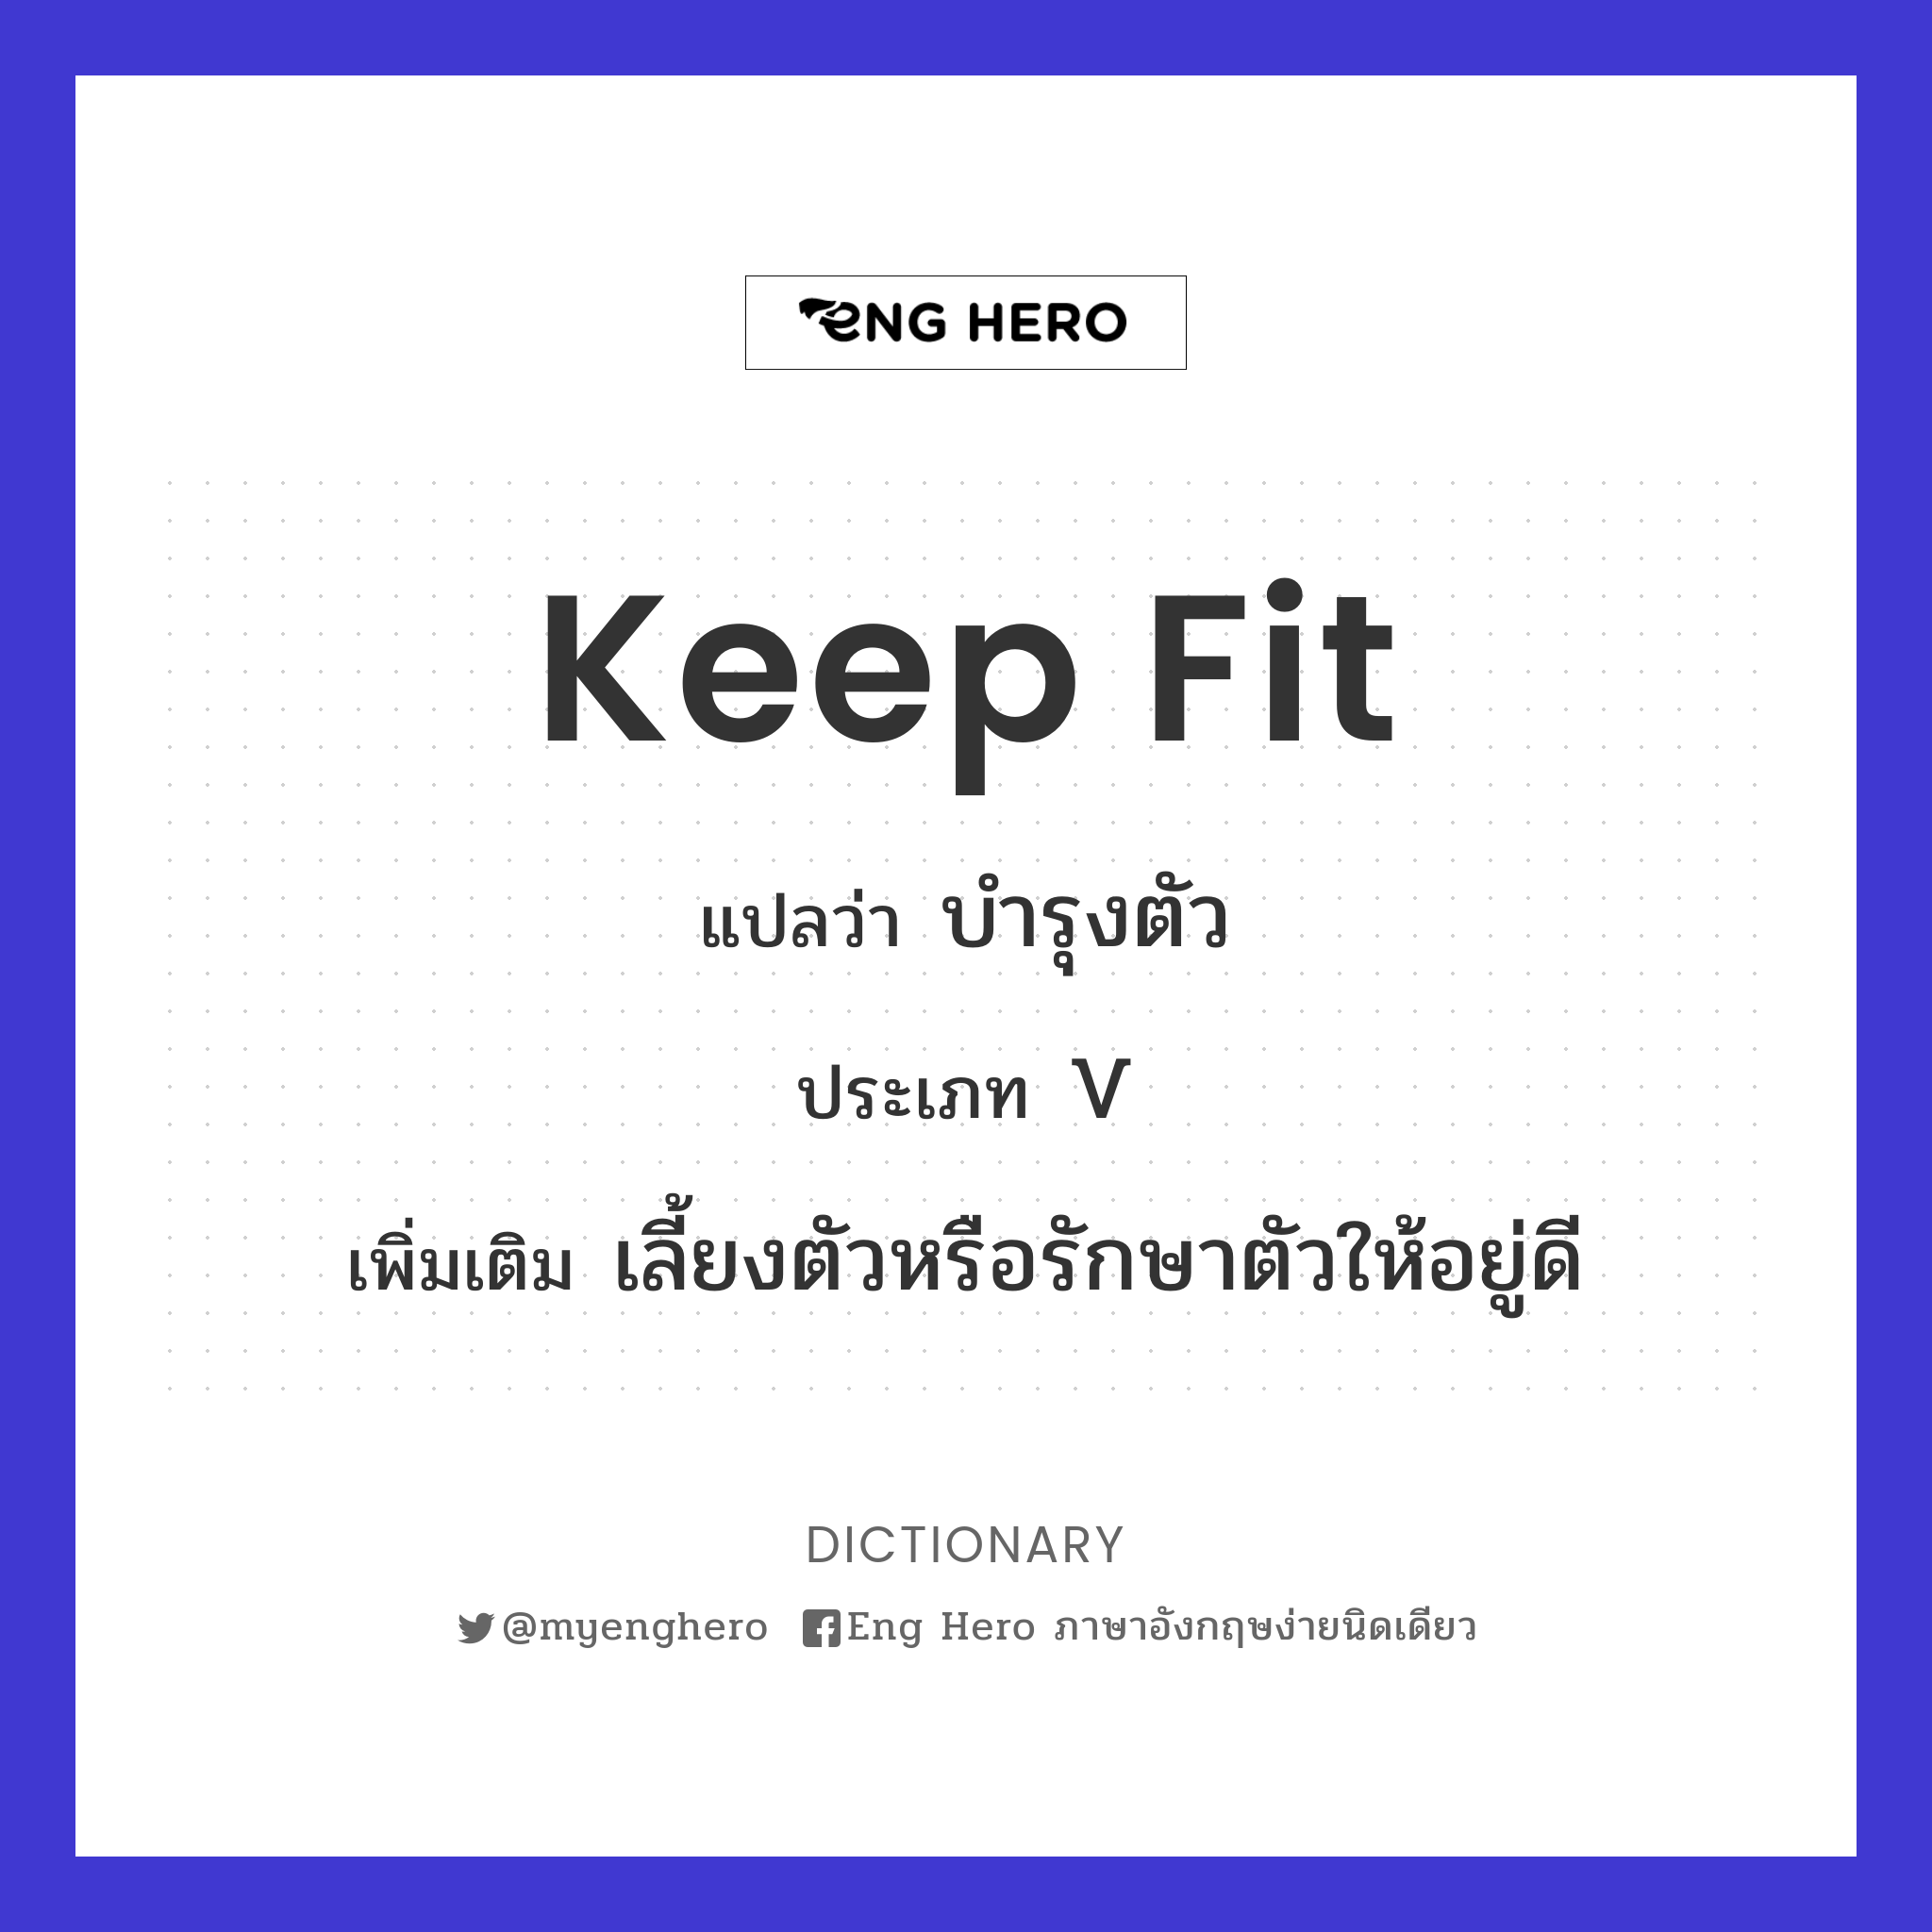 keep fit